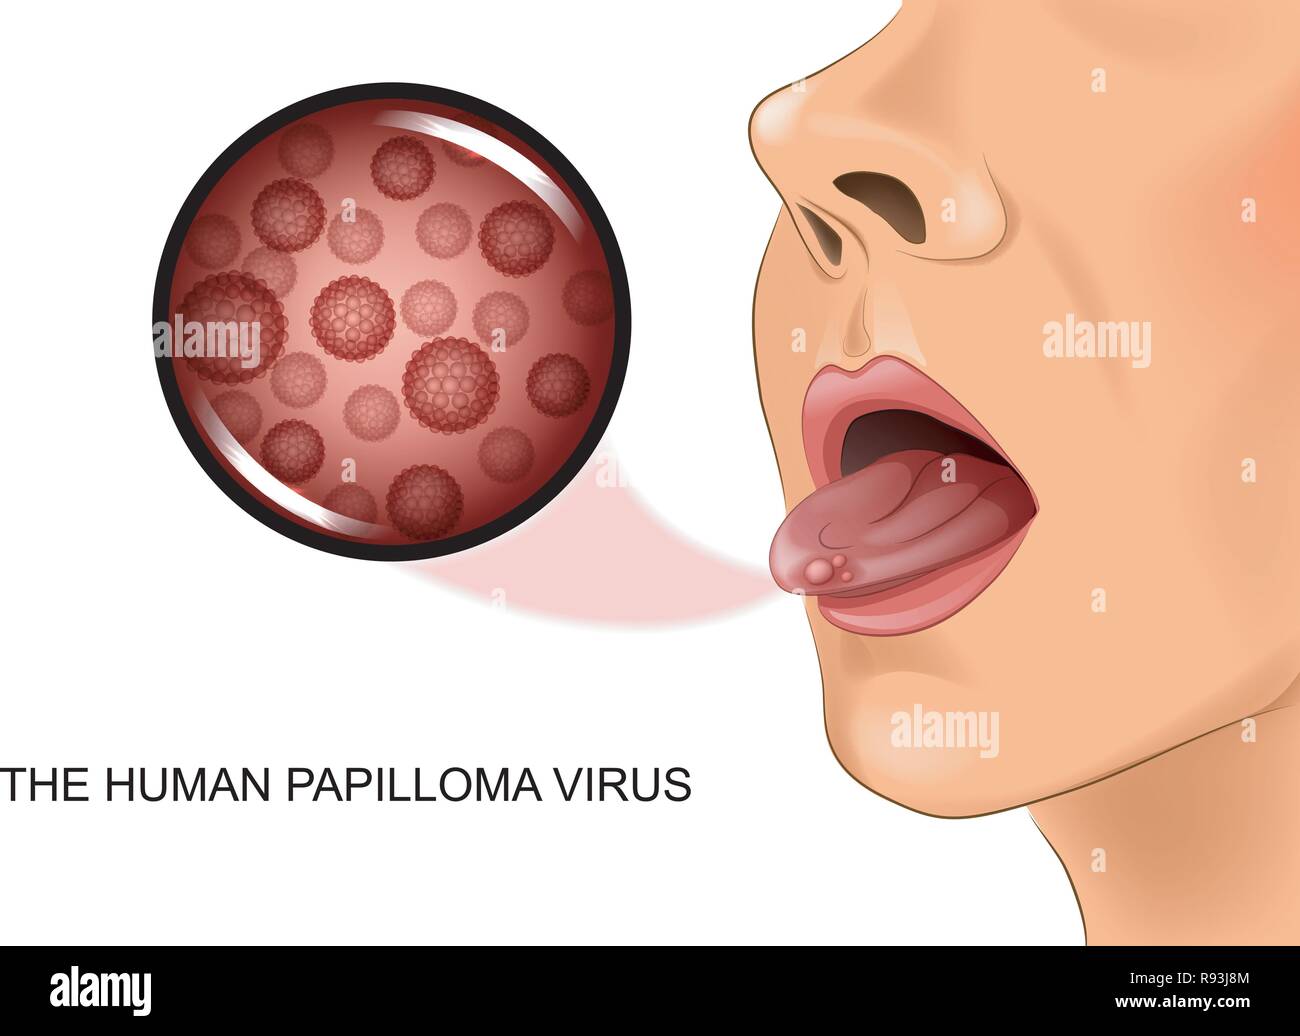 vector illustration of human papillomavirus on tongue Stock Vector